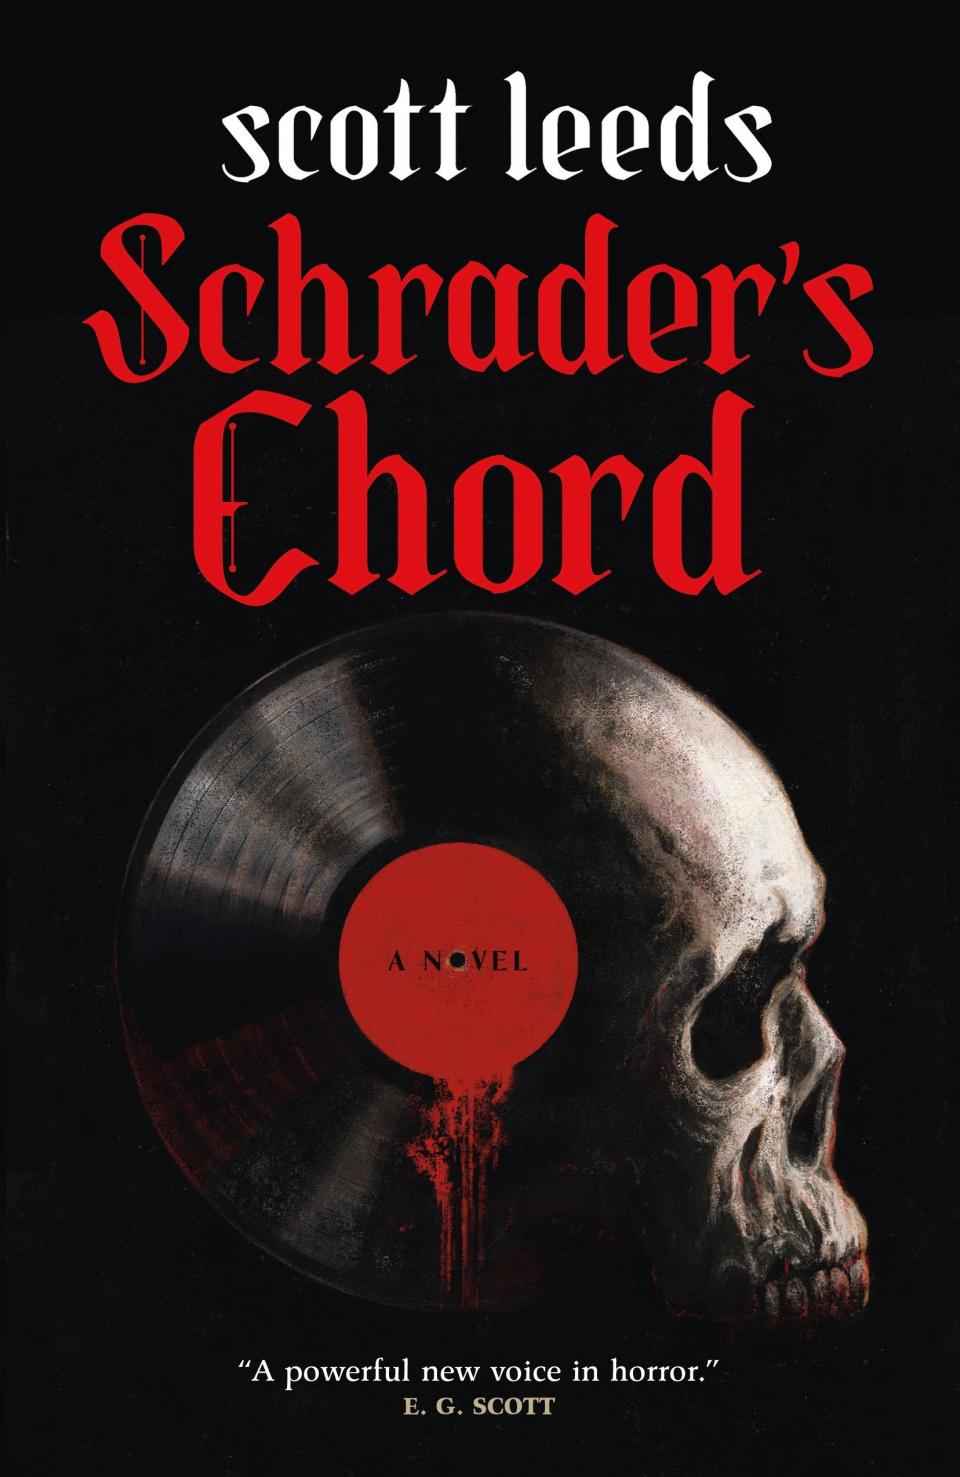 "Schrader's Chord," by Scott Leeds.